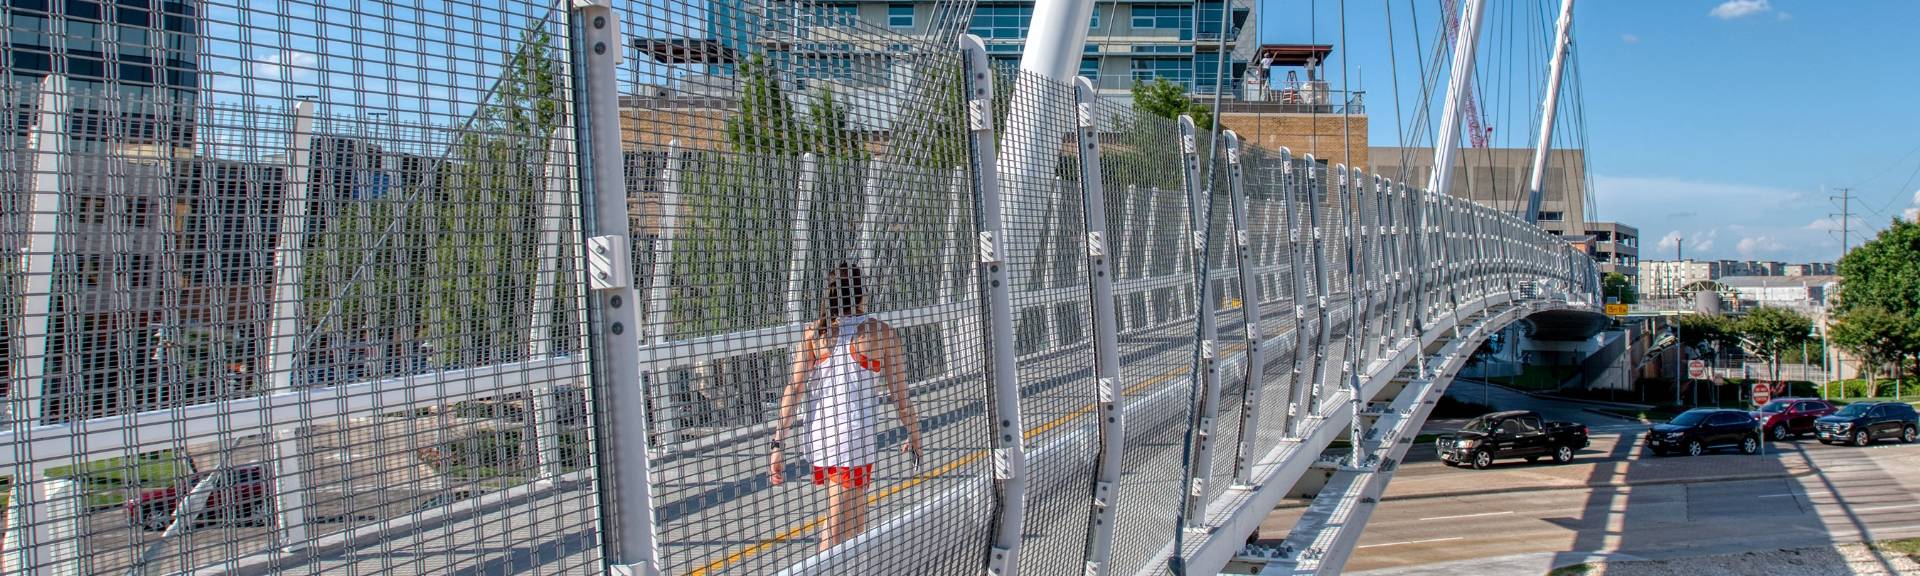 <!-Argger Das architekto nische Netz dient als Sicherheits barriere auf der Fußgänger brücke.